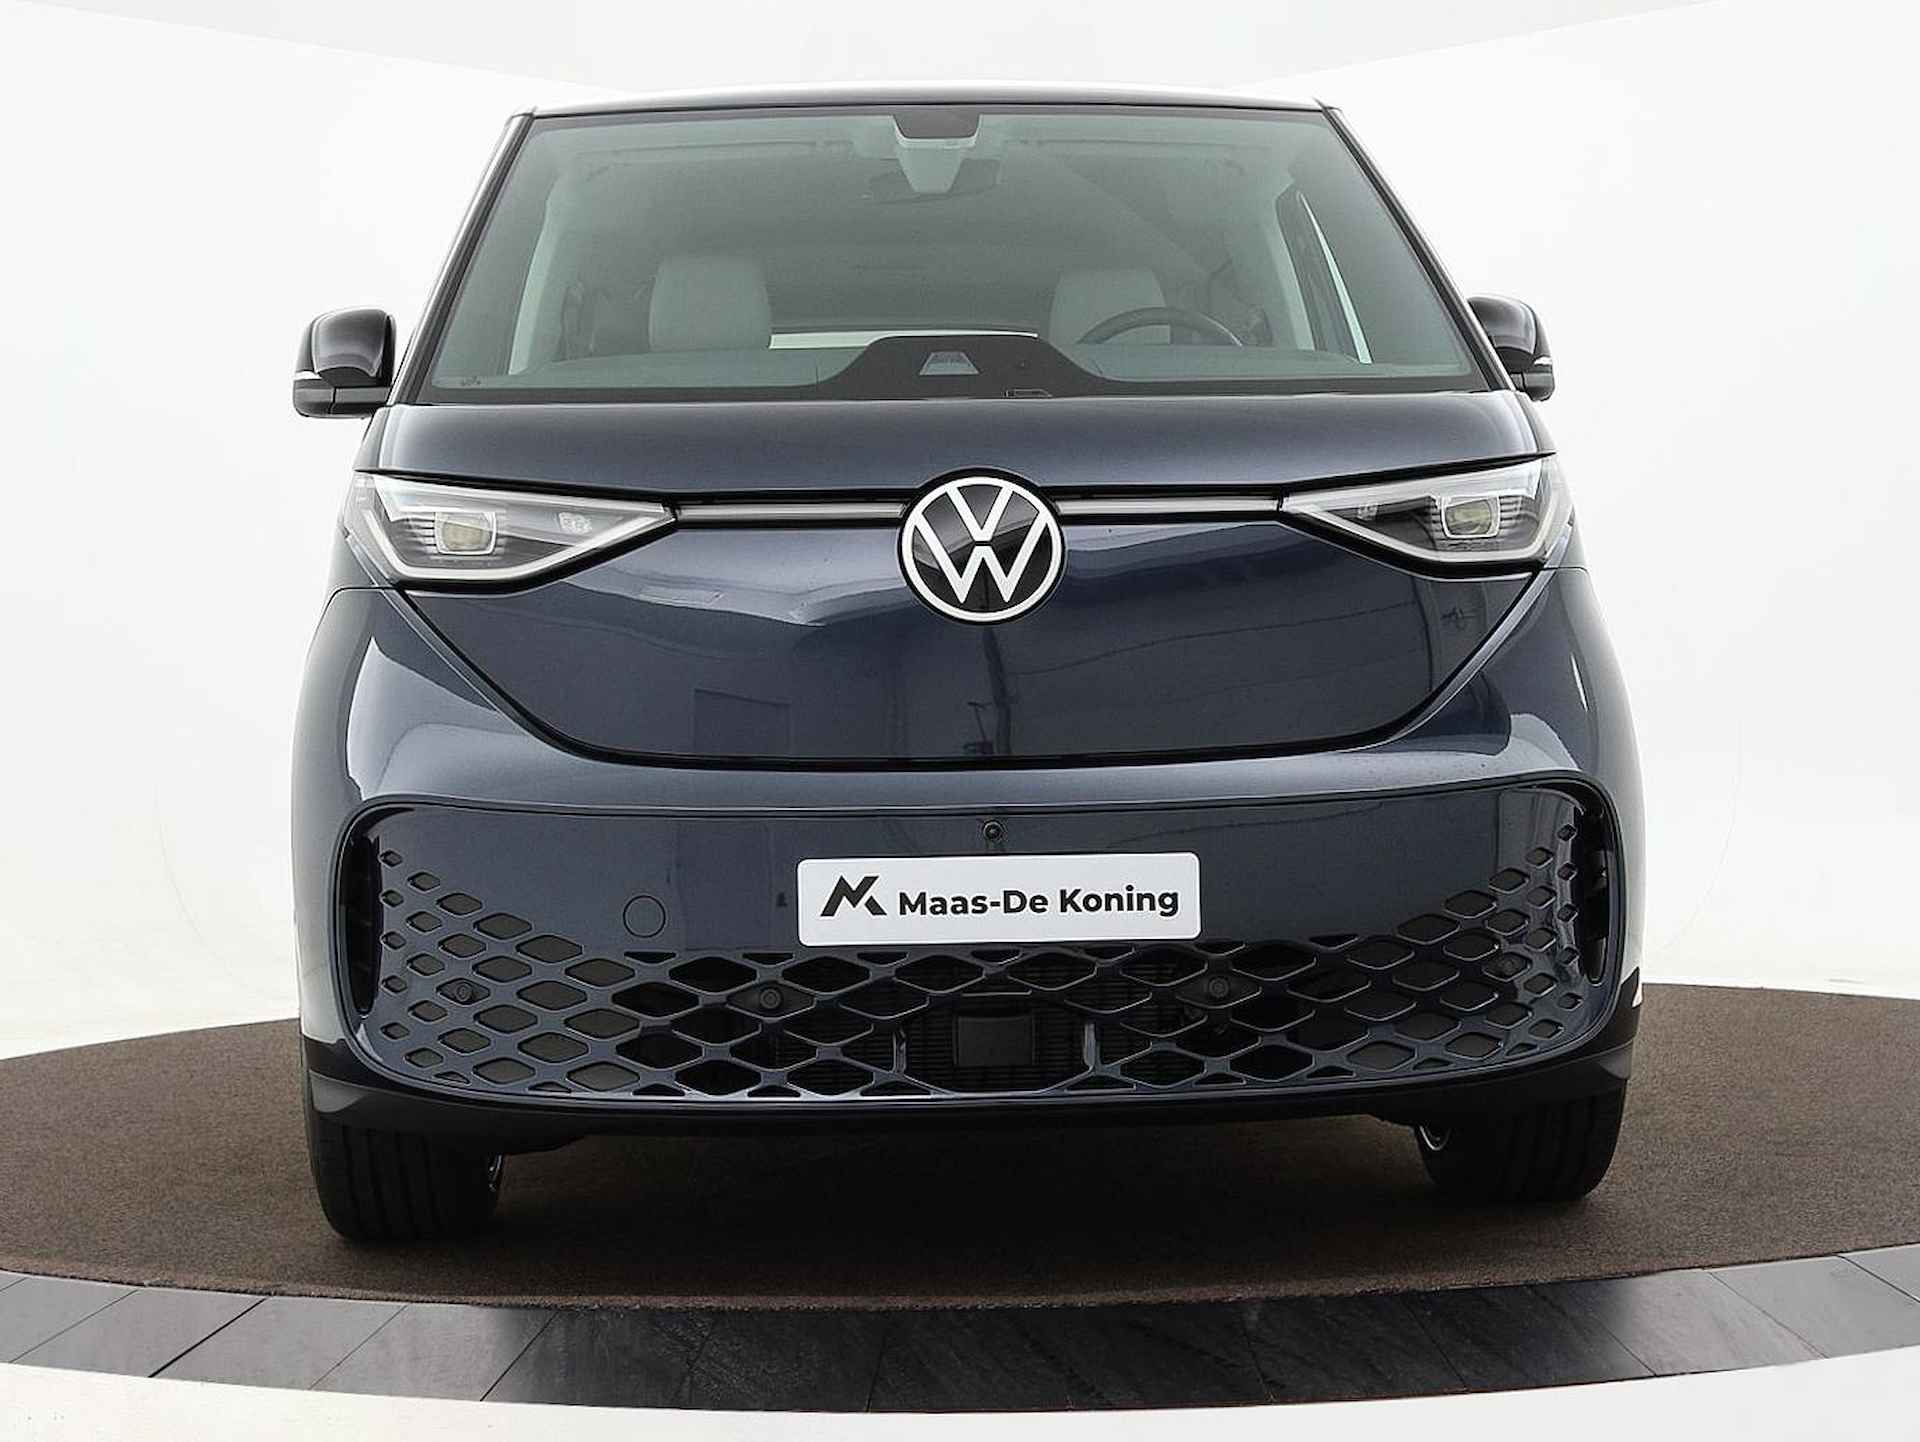 Volkswagen ID. Buzz pro advantage Elektromotor 150 kW / 204 pk electr. aandrijving · Assistance pakket · Design pakket · multimedia pakket plus · open & close pakket plus · trekhaak · MEGA Sale - 22/40